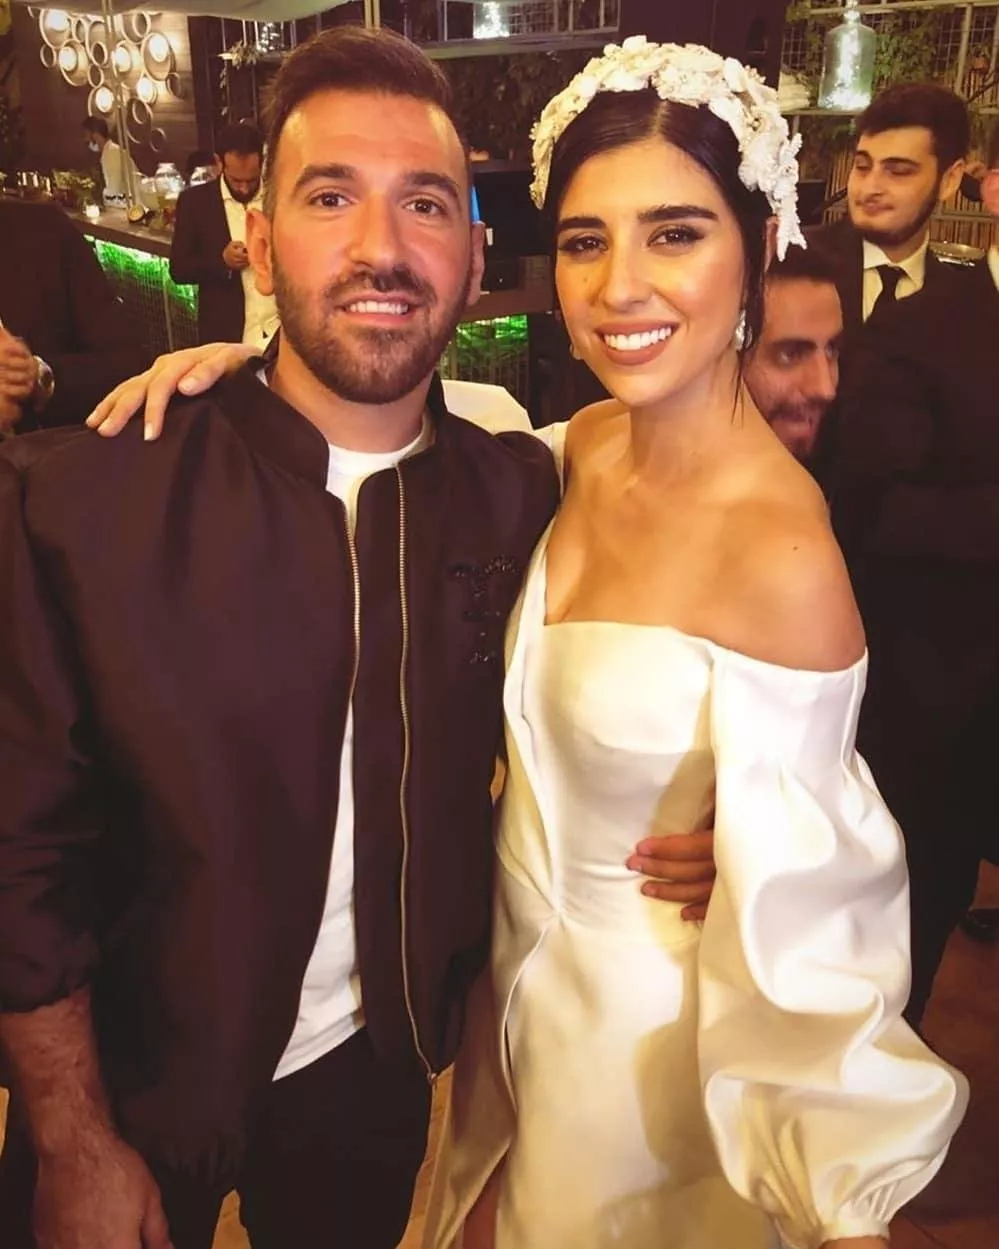 بالصور، زينة مكي تطلّ بلوك ناعم وجميل في حفل زفافها